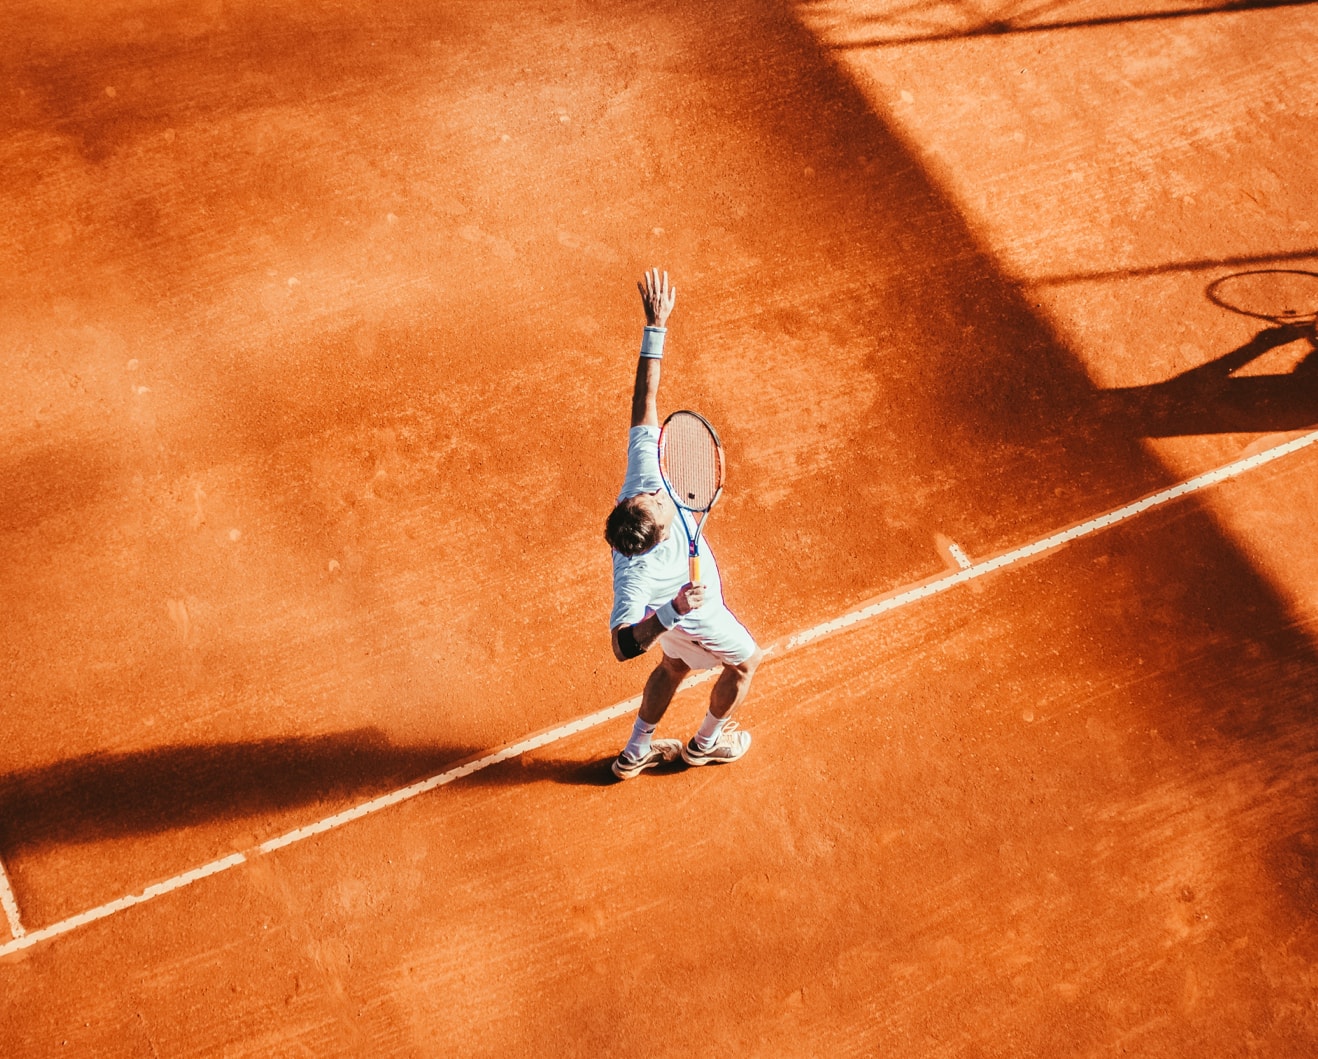 Tennis Aufschlag auf Sandplatz - Vogelperspektive